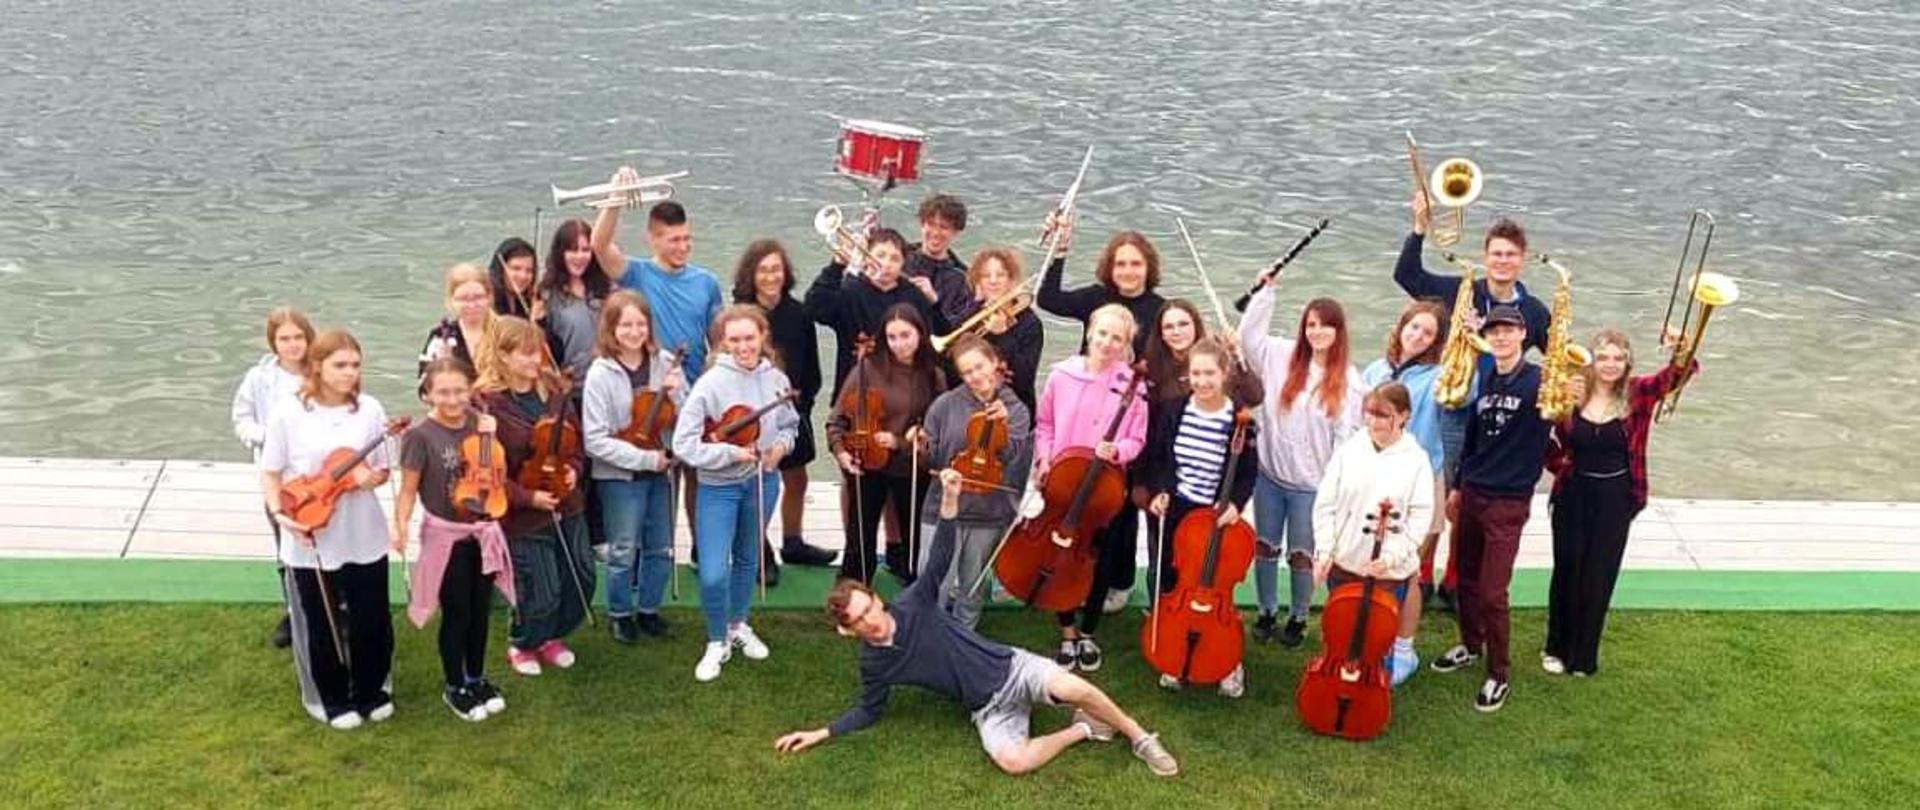 Zdjęcie - na tle jeziora grupa młodzieży z instrumentami - orkiestra